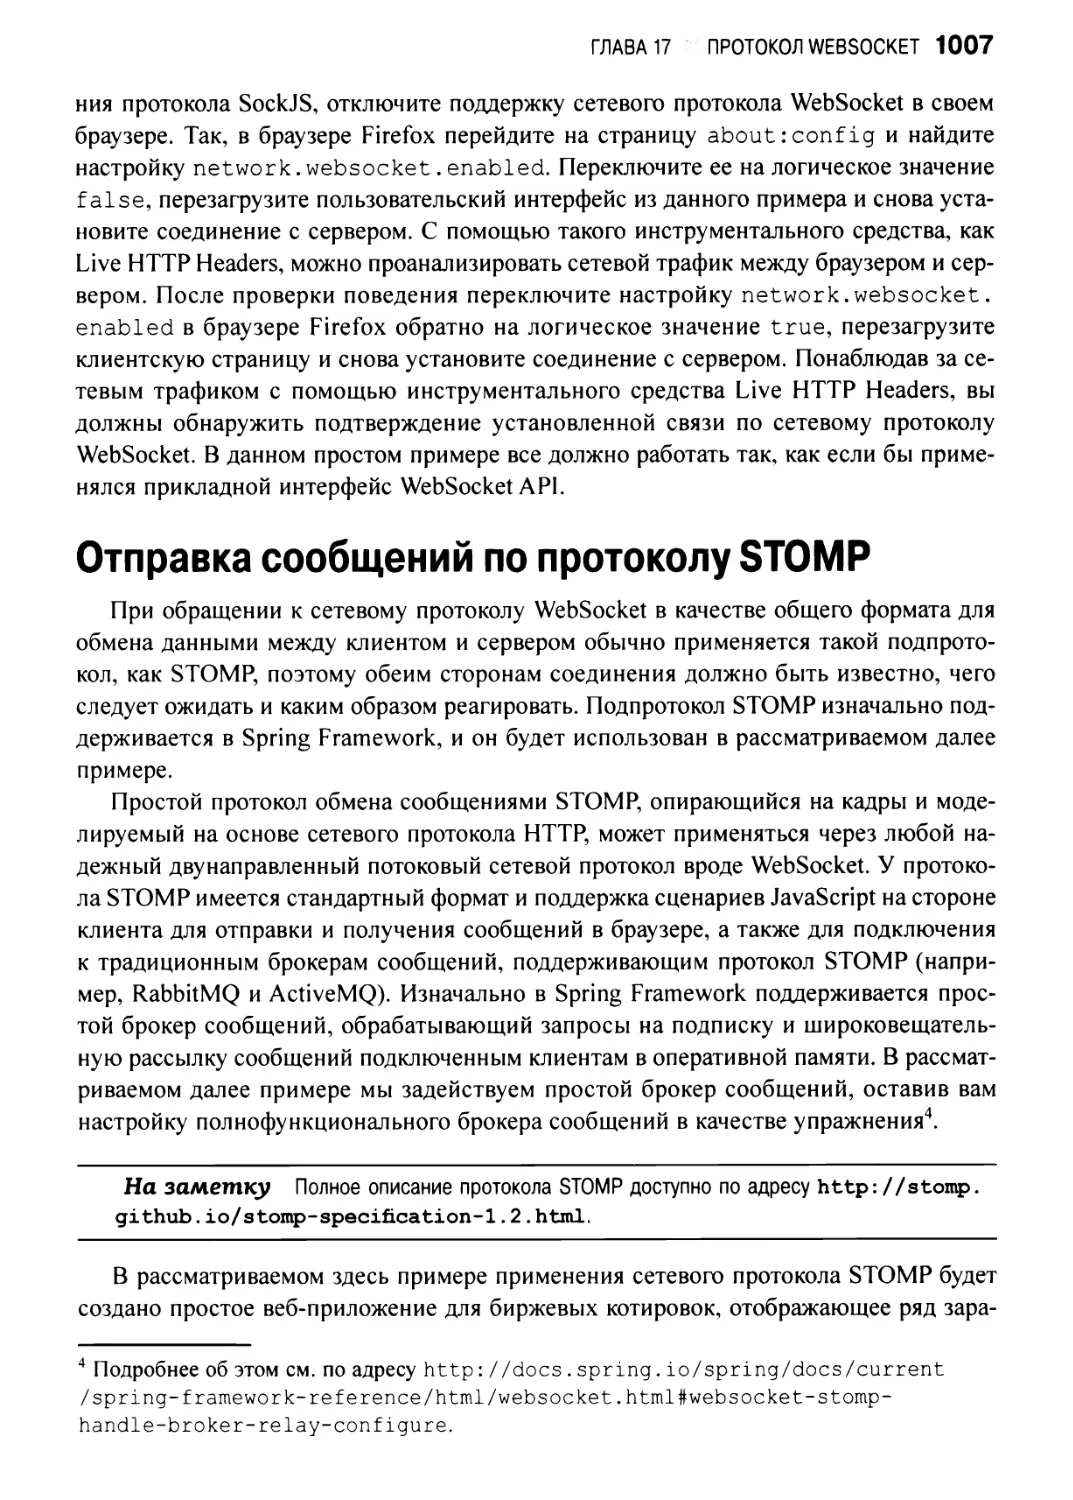 Отправка сообщений по протоколу STOMP